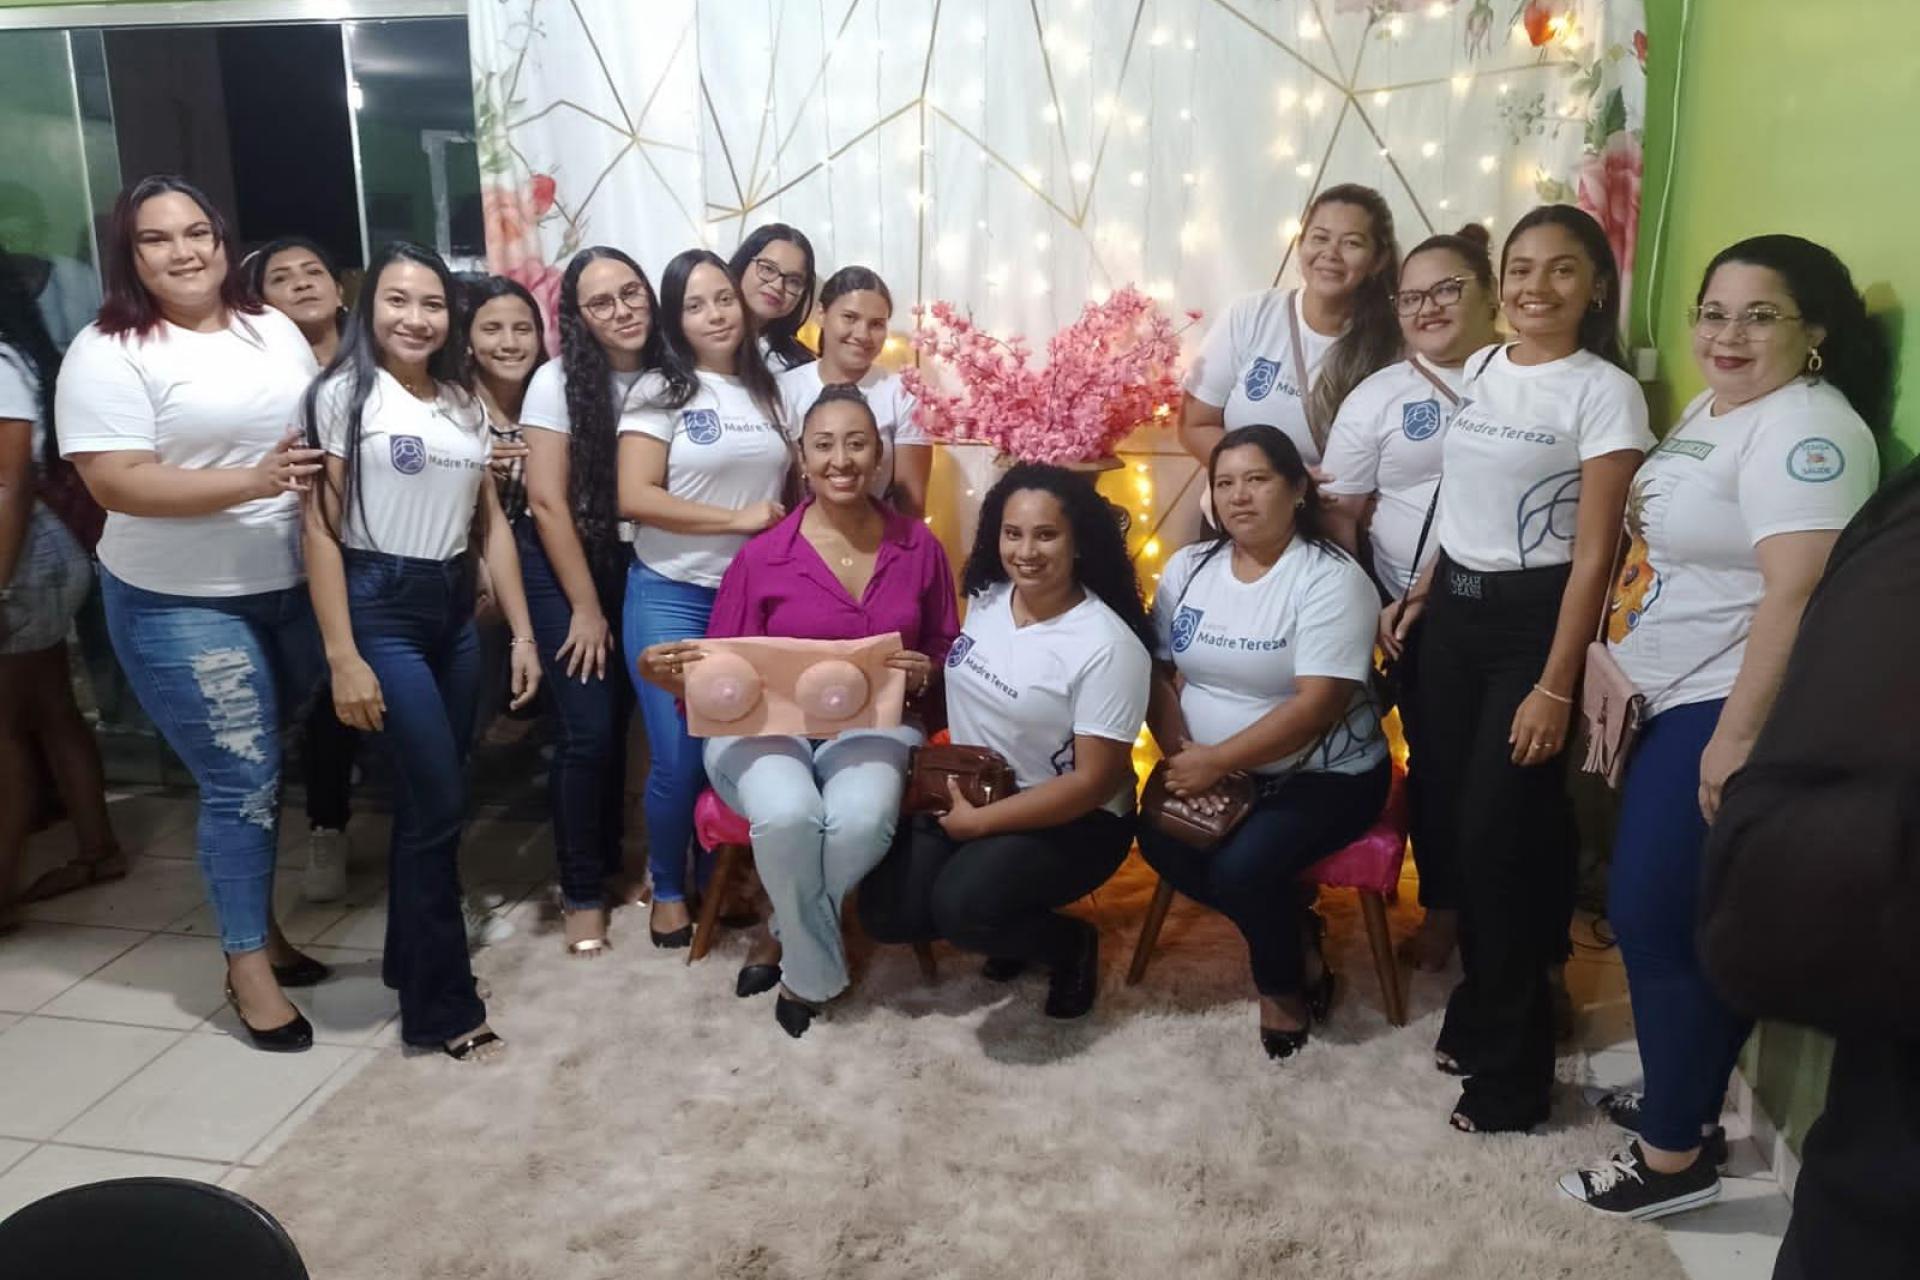 Grupo Madre Tereza realiza Ciclo de Palestras em alusão ao Outubro Rosa